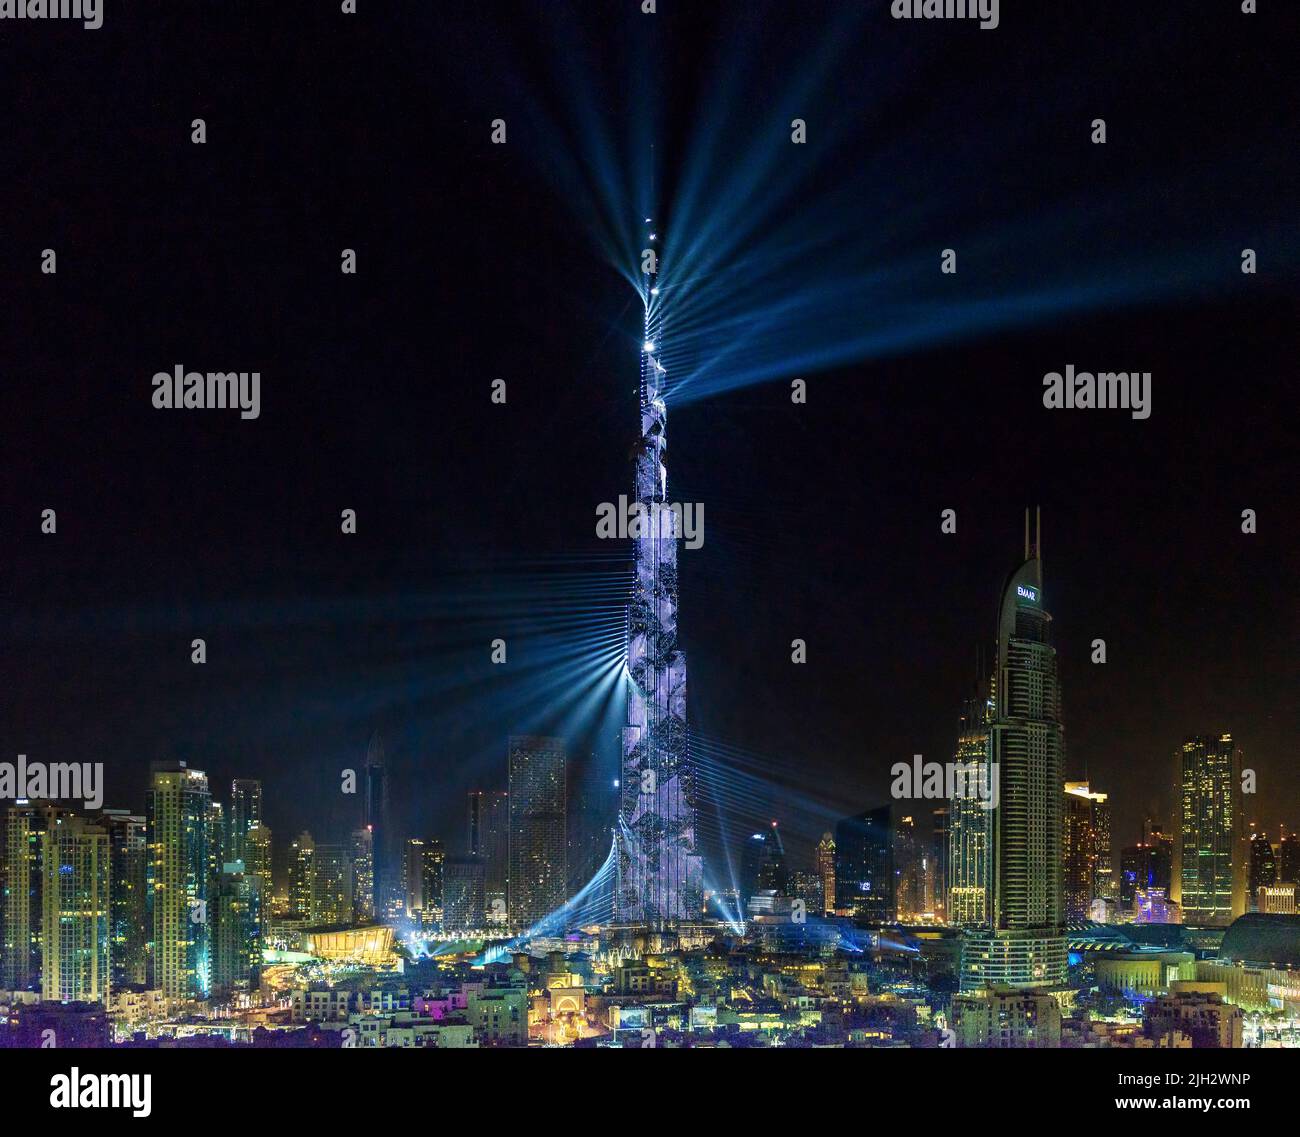 Light show on Burj Khalifa during the New year Eve 2018, Dubai, United Arab Emirates Stock Photo